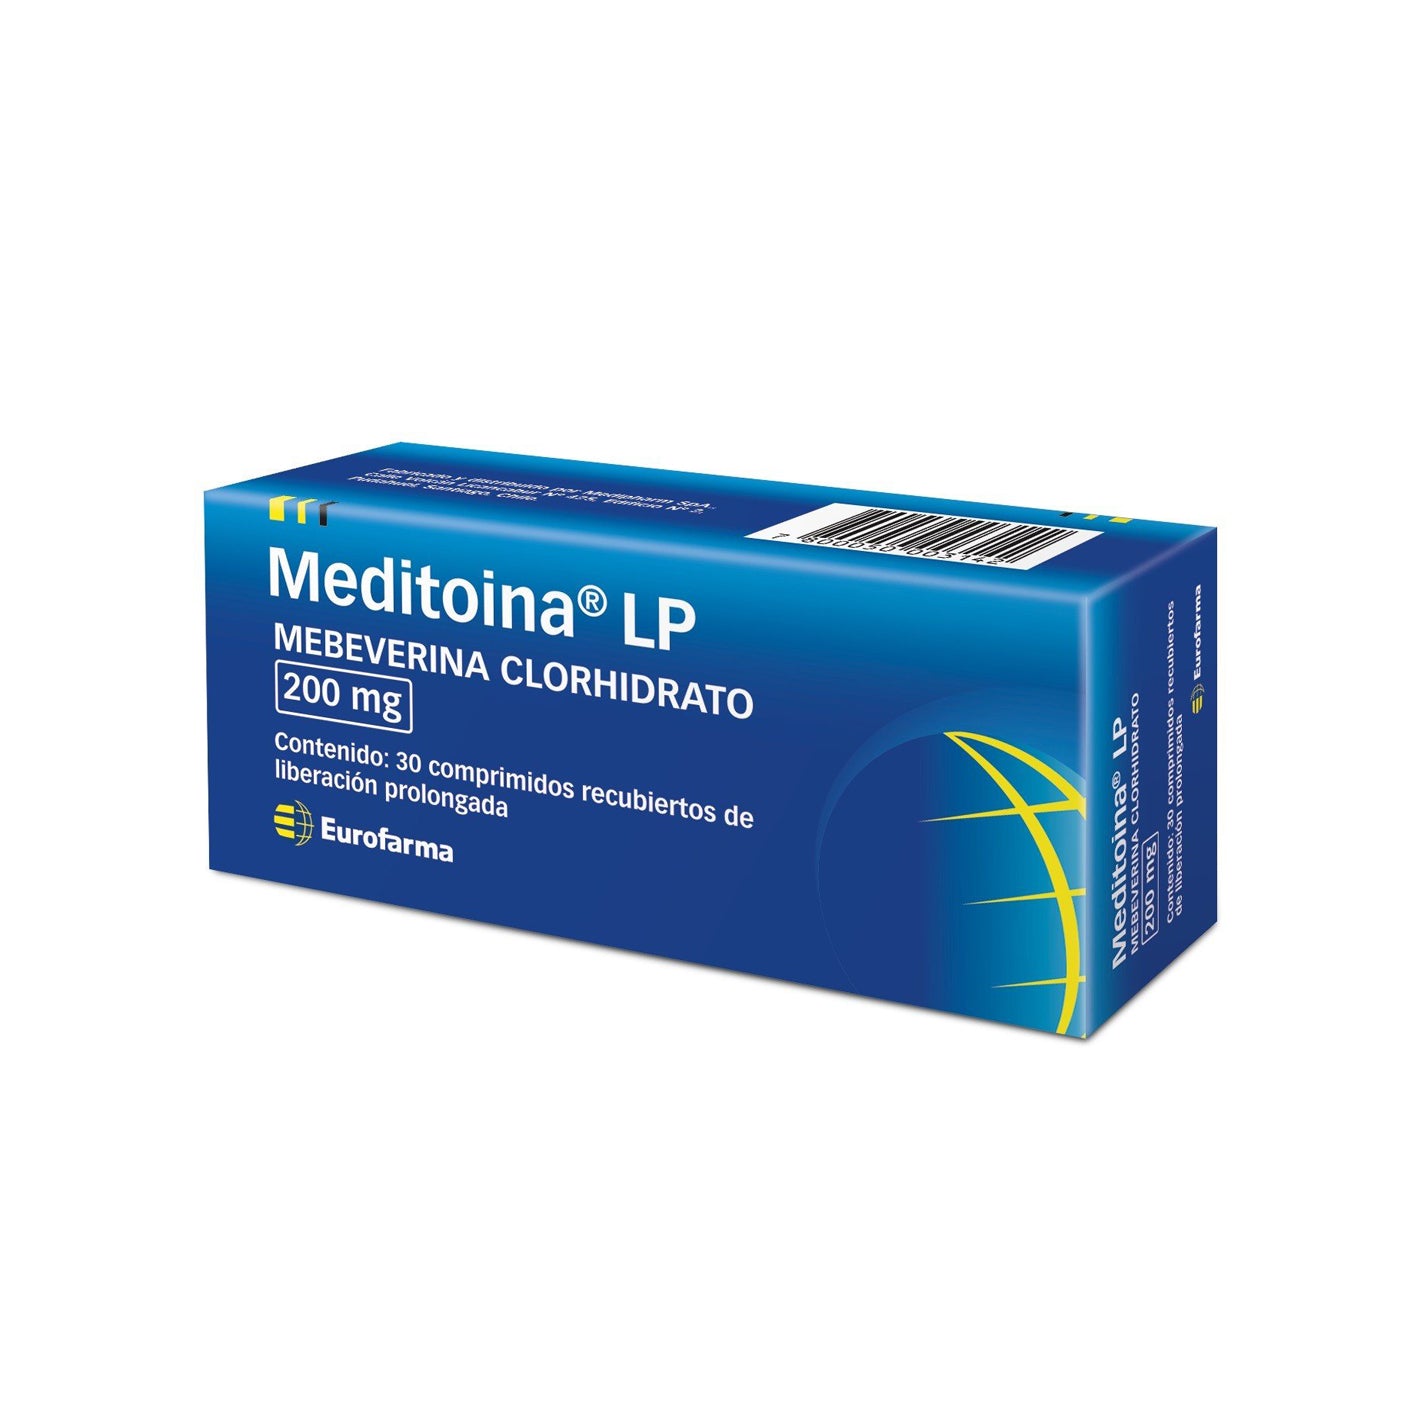 Meditoina LP Comprimidos Recubiertos de Liberación Prolongada 200mg